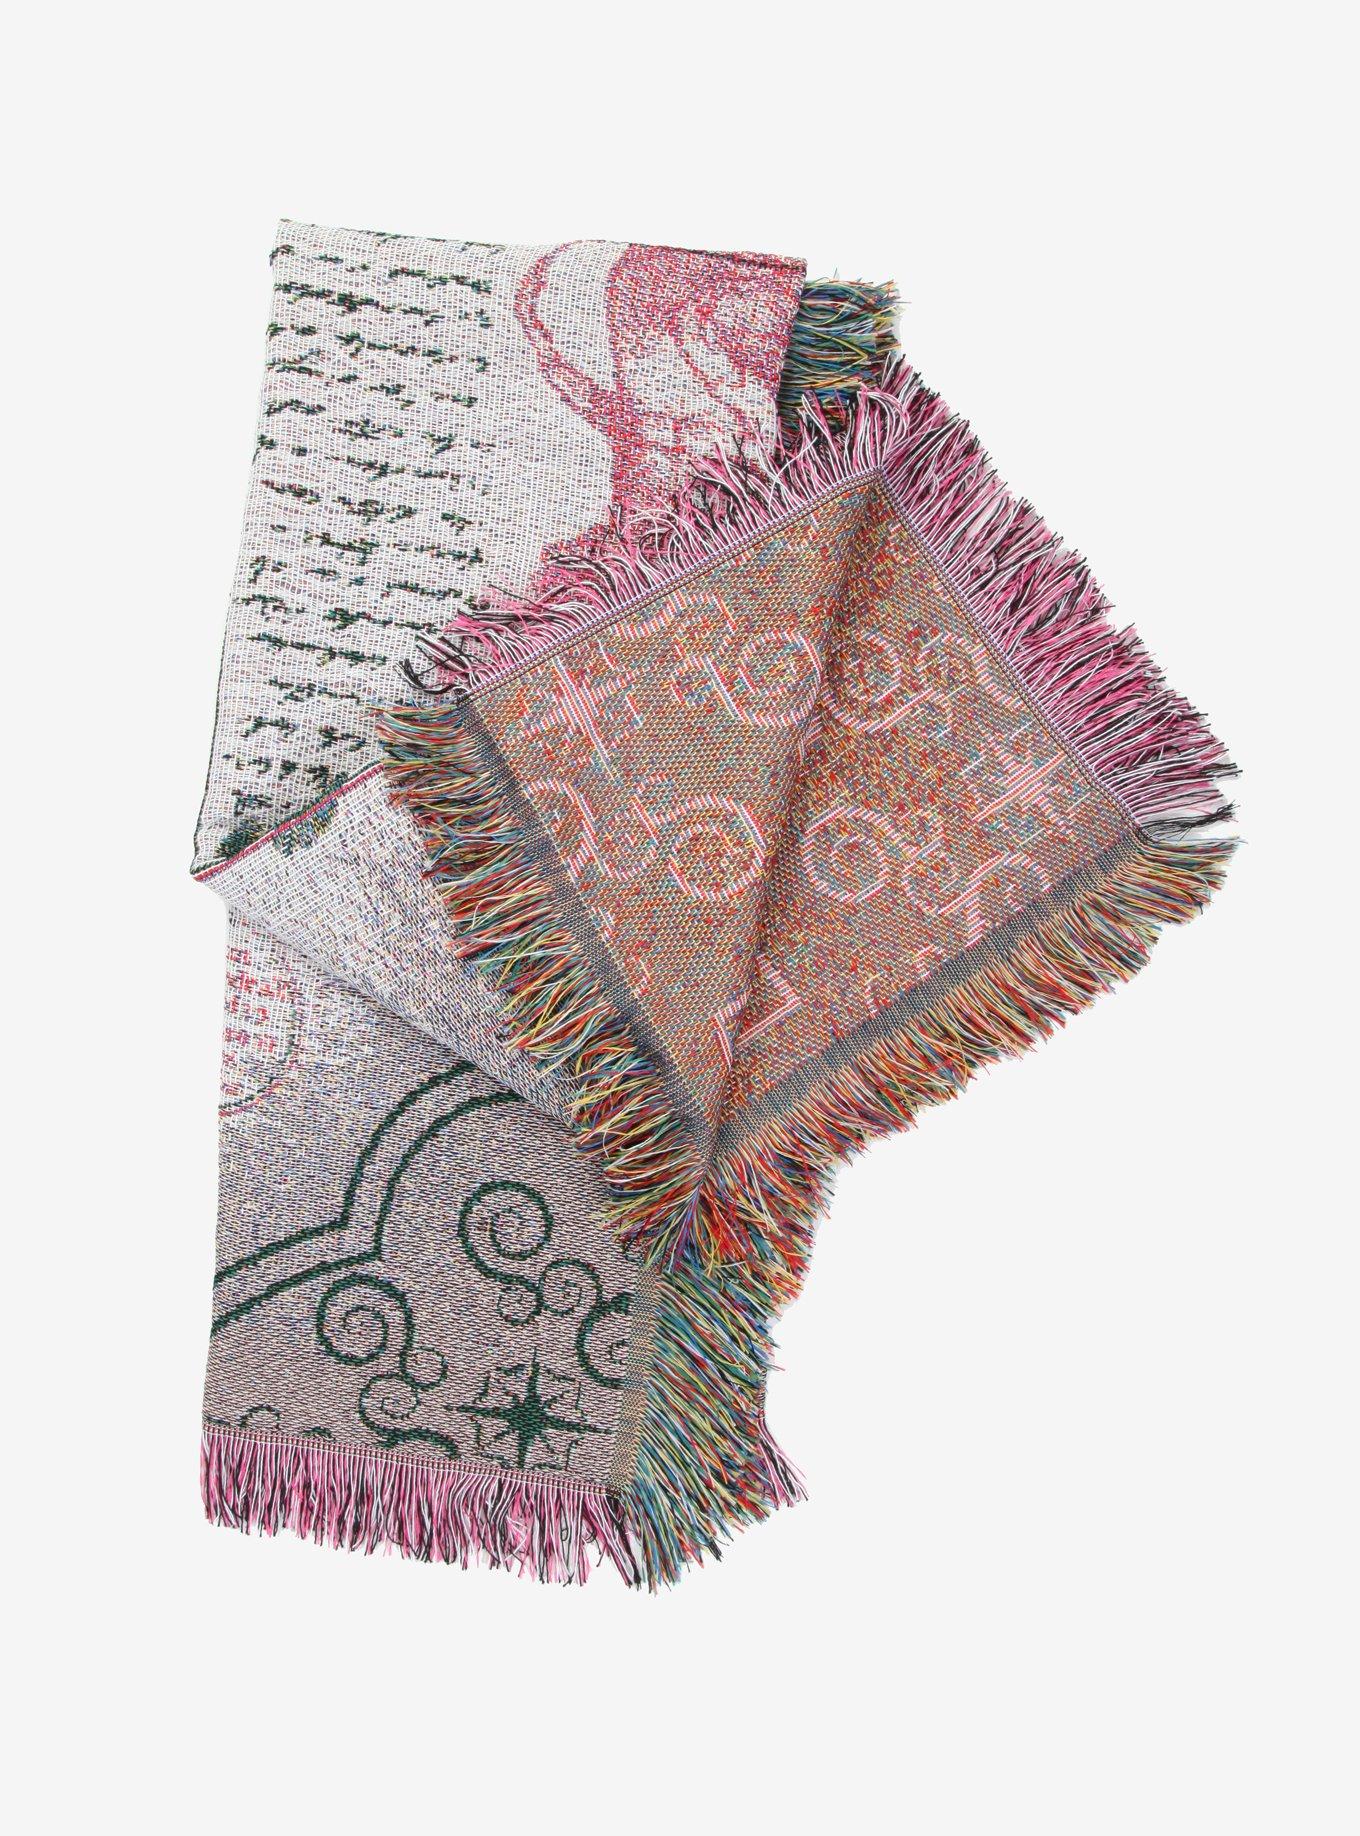 Harry Potter Mandrake Illustrated Woven Tapestry Throw Blanket, , alternate